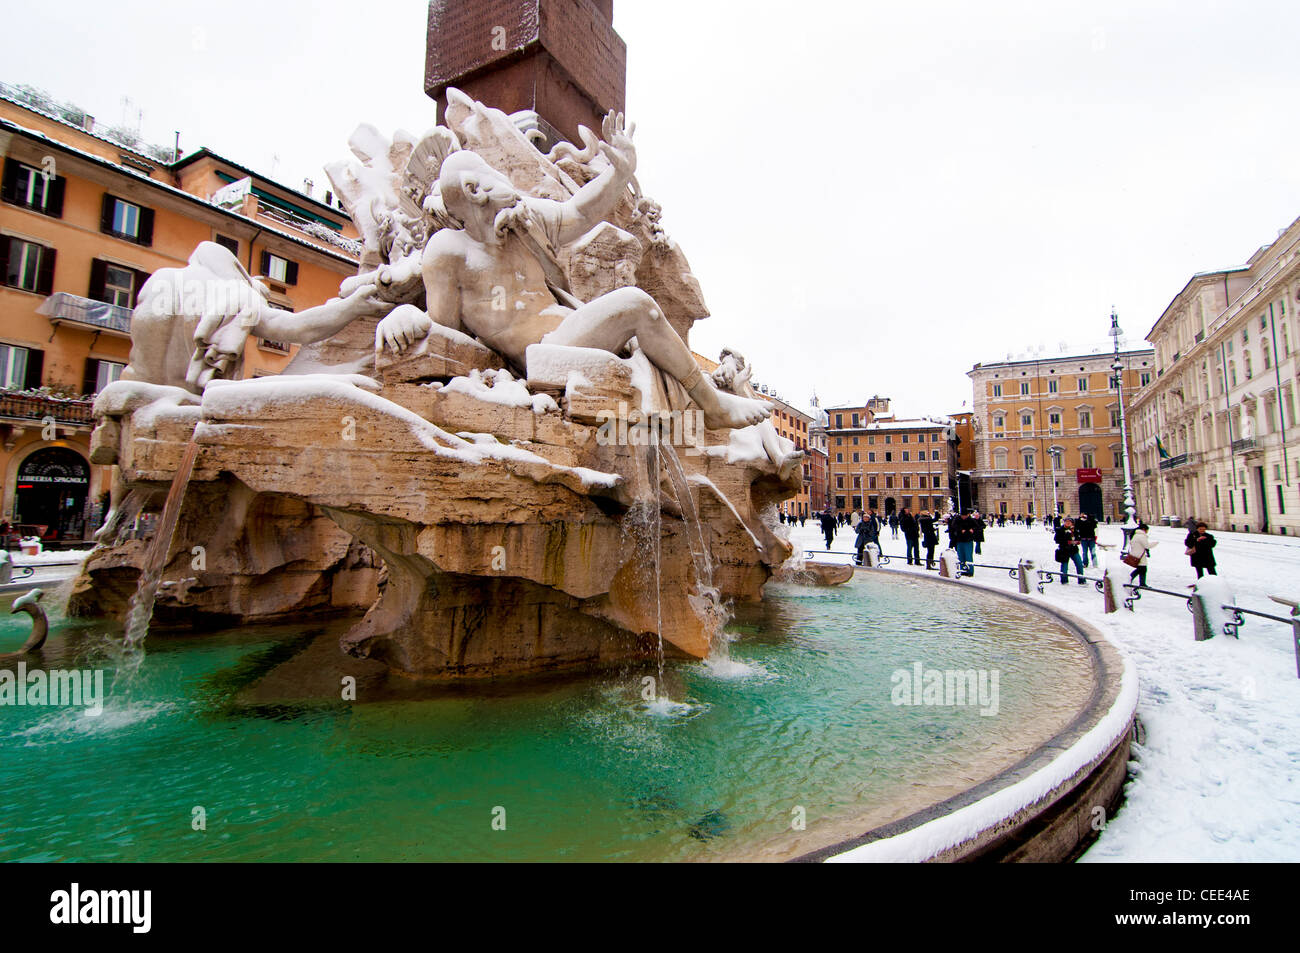 La neige a couvert vue de Fontana dei Quattro Fiumi, Rome Italie Banque D'Images